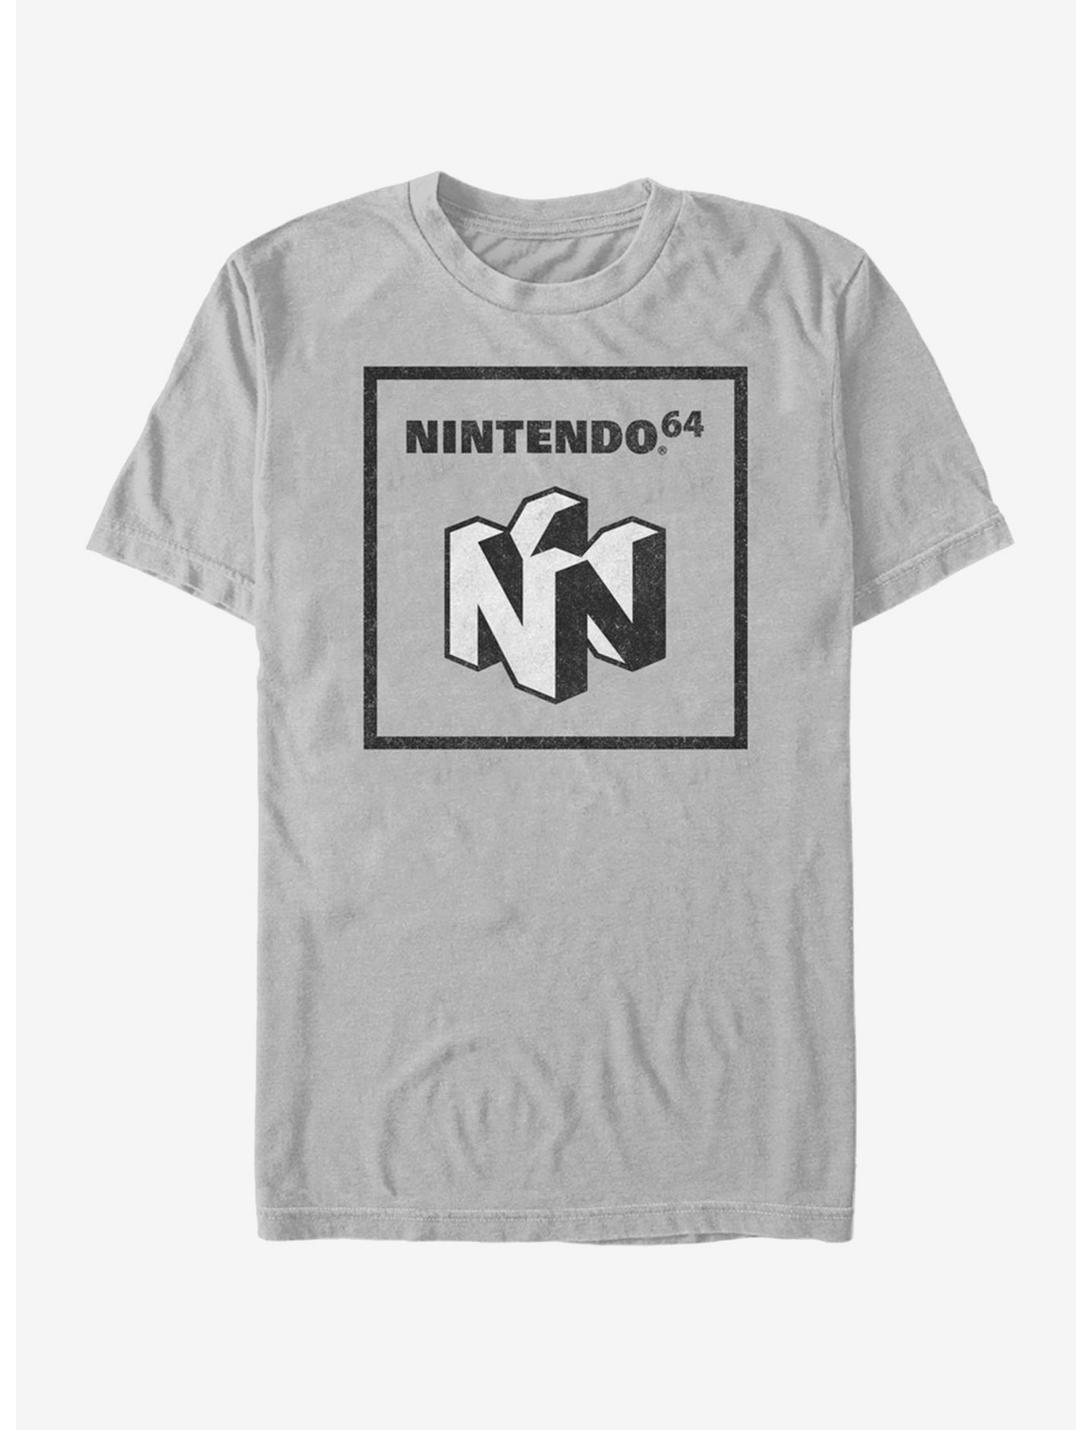 Nintendo 64 Element T-Shirt, SILVER, hi-res